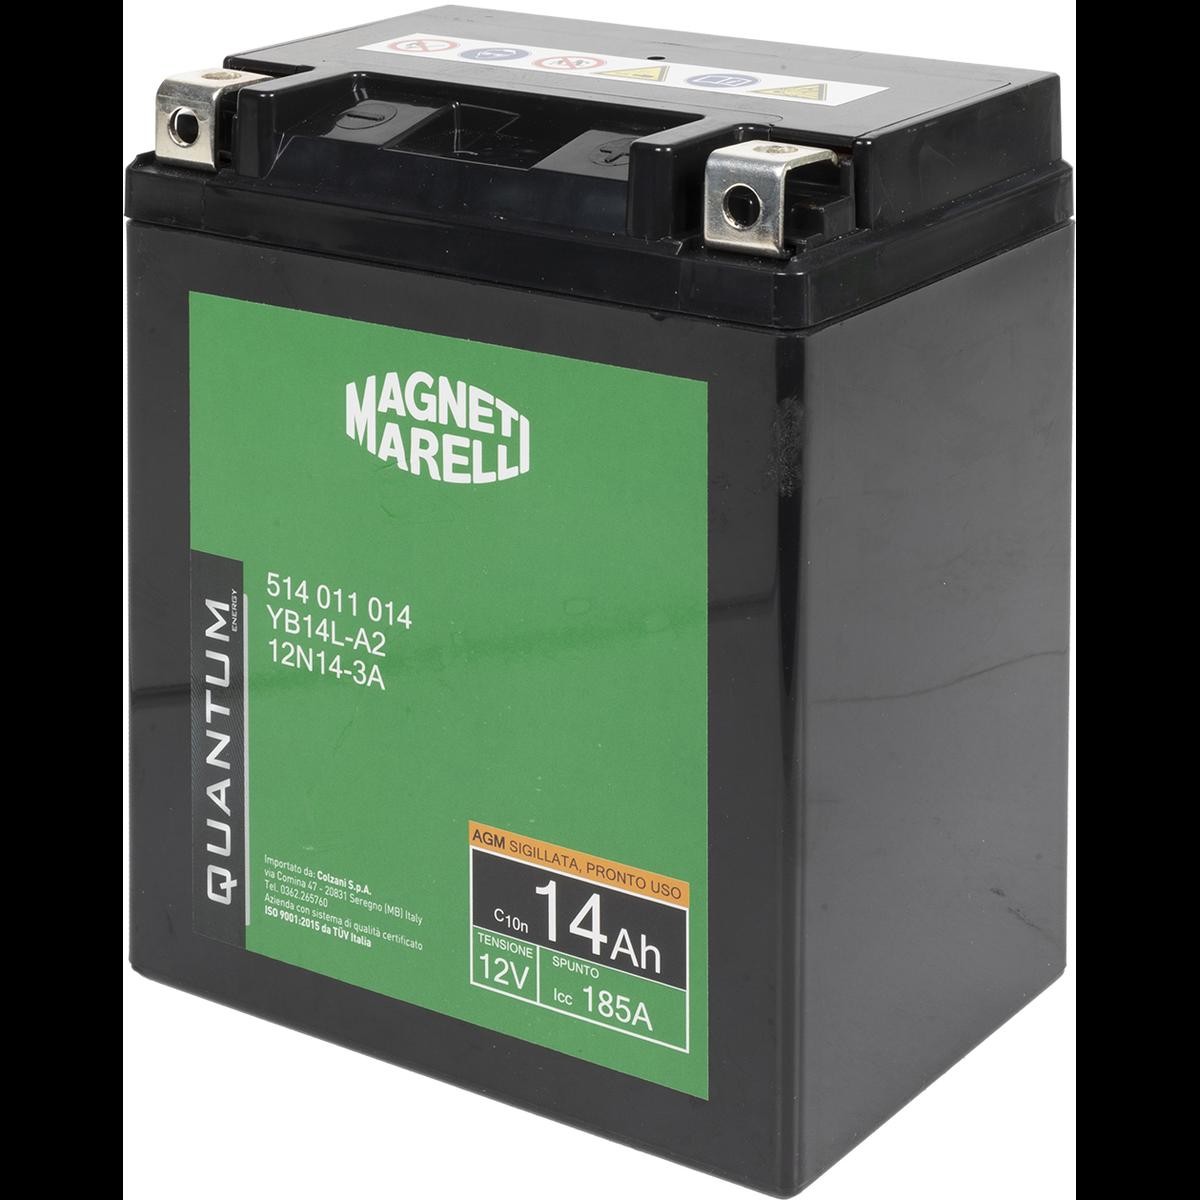 QUANTUM ENERGY Magneti Marelli 12V 14Ah 85A Lead-acid battery, AGM Battery Cold-test Current, EN: 85A, Voltage: 12V Starter battery 10833 buy